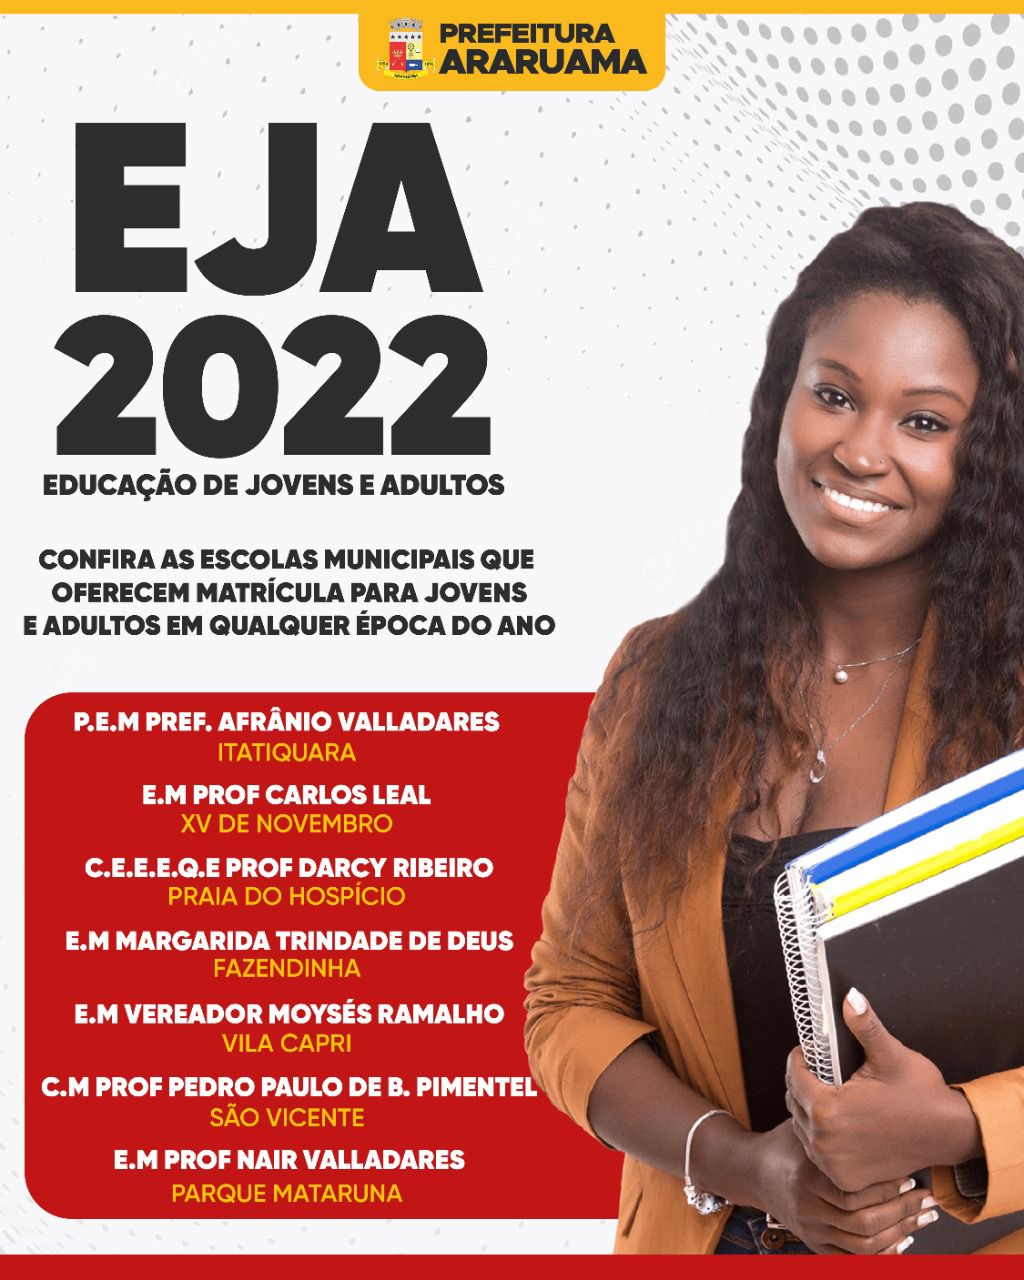 Escolas Municipais de Araruama estão com matrículas abertas para o EJA (Educação de Jovens e Adultos)